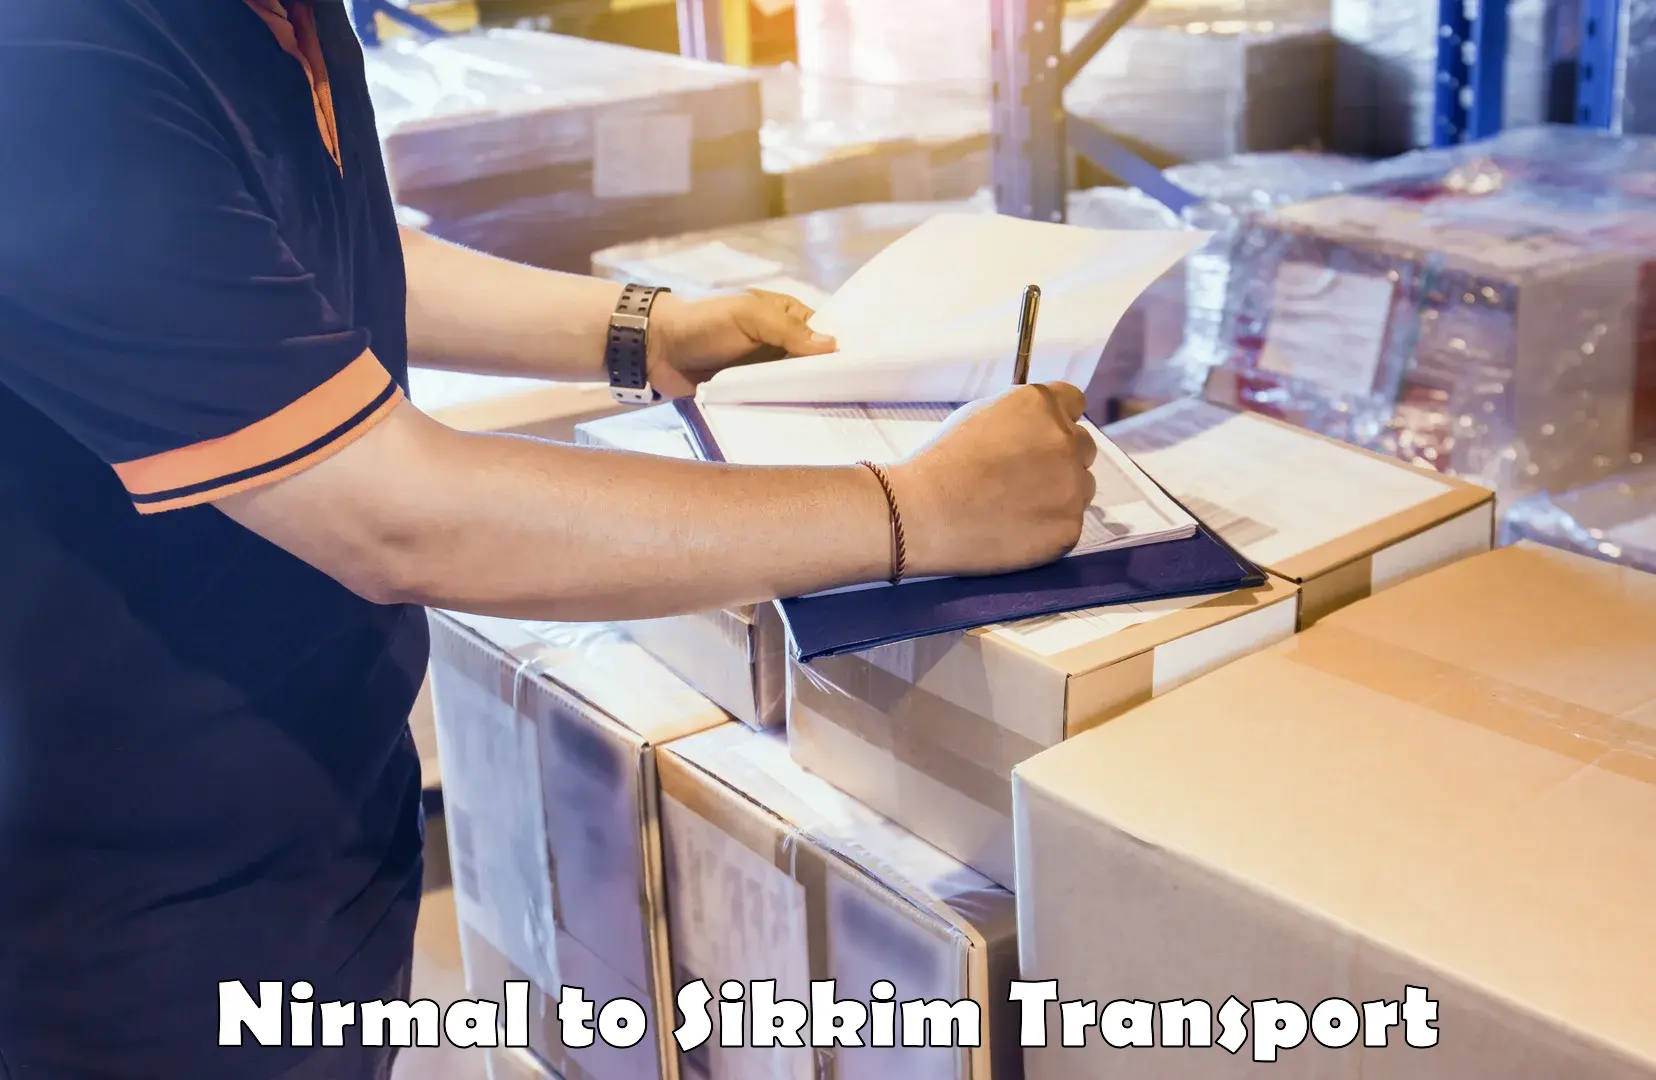 Furniture transport service Nirmal to Mangan